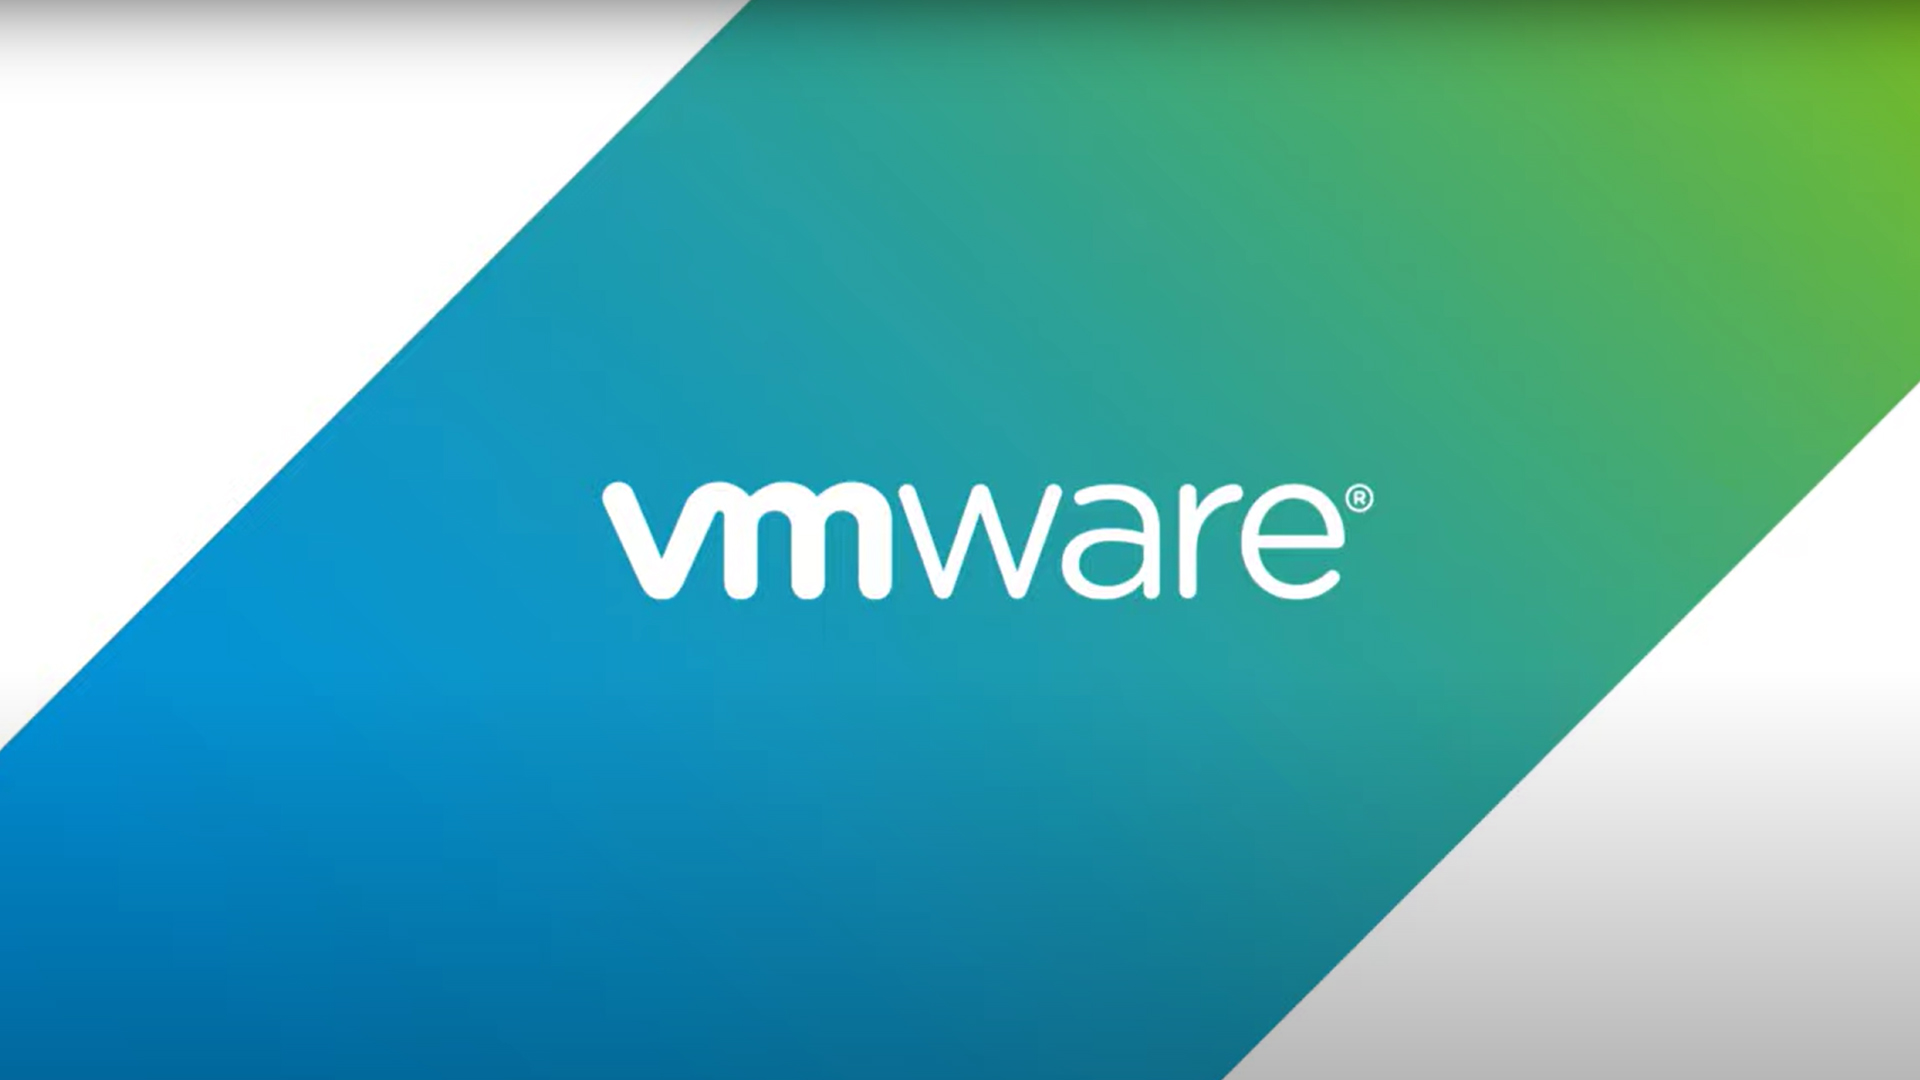 vmware-workspace-one-vergleich-video-thumbnail